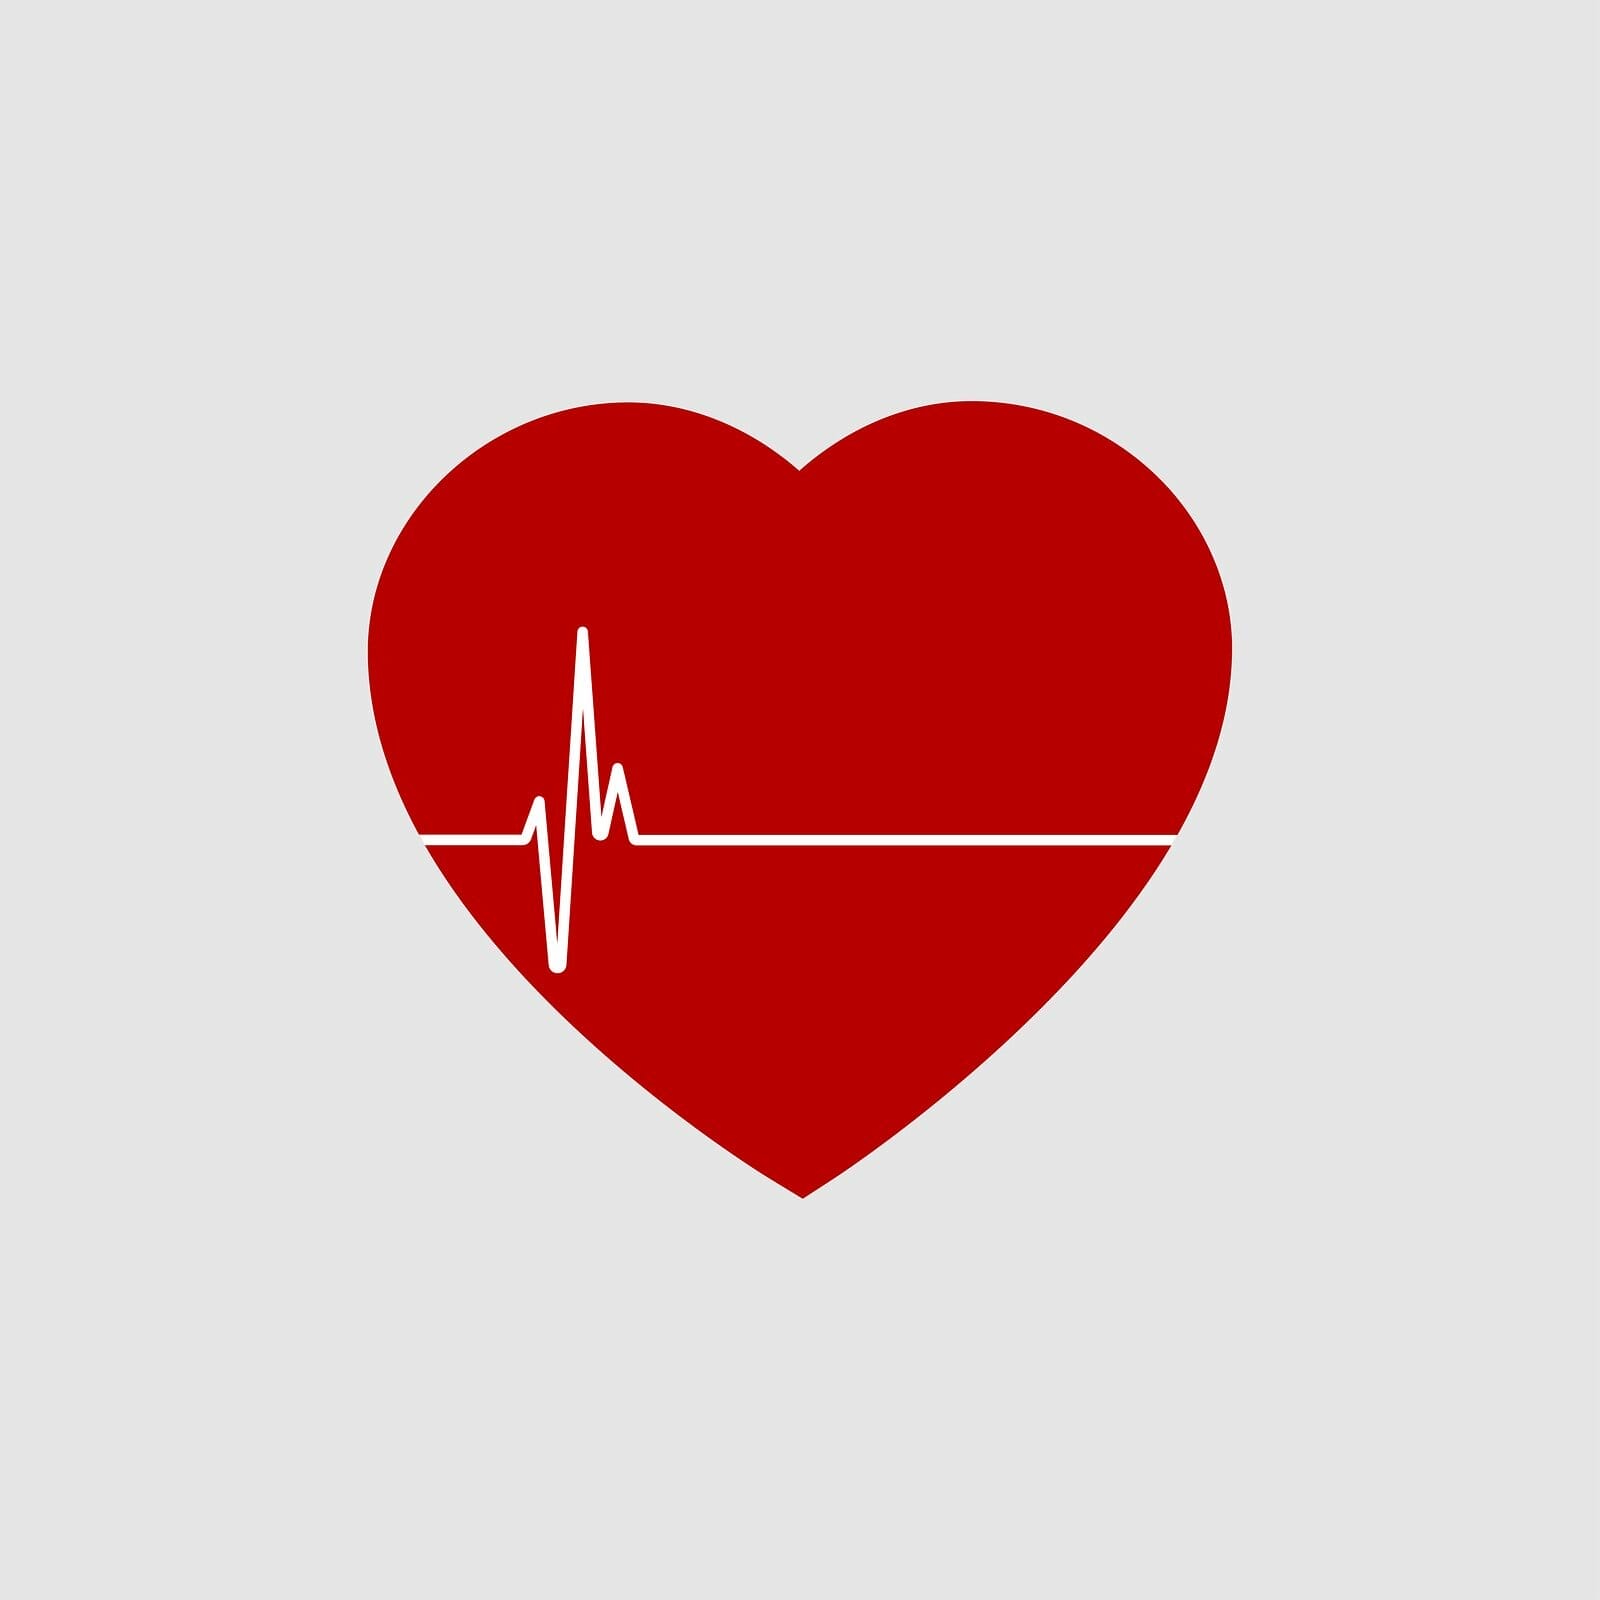 עו"ד נעמי קויפמן ניב I תביעות רשלנות רפואית I רשלנות רפואית במחלות לב וקרדיולוגיה